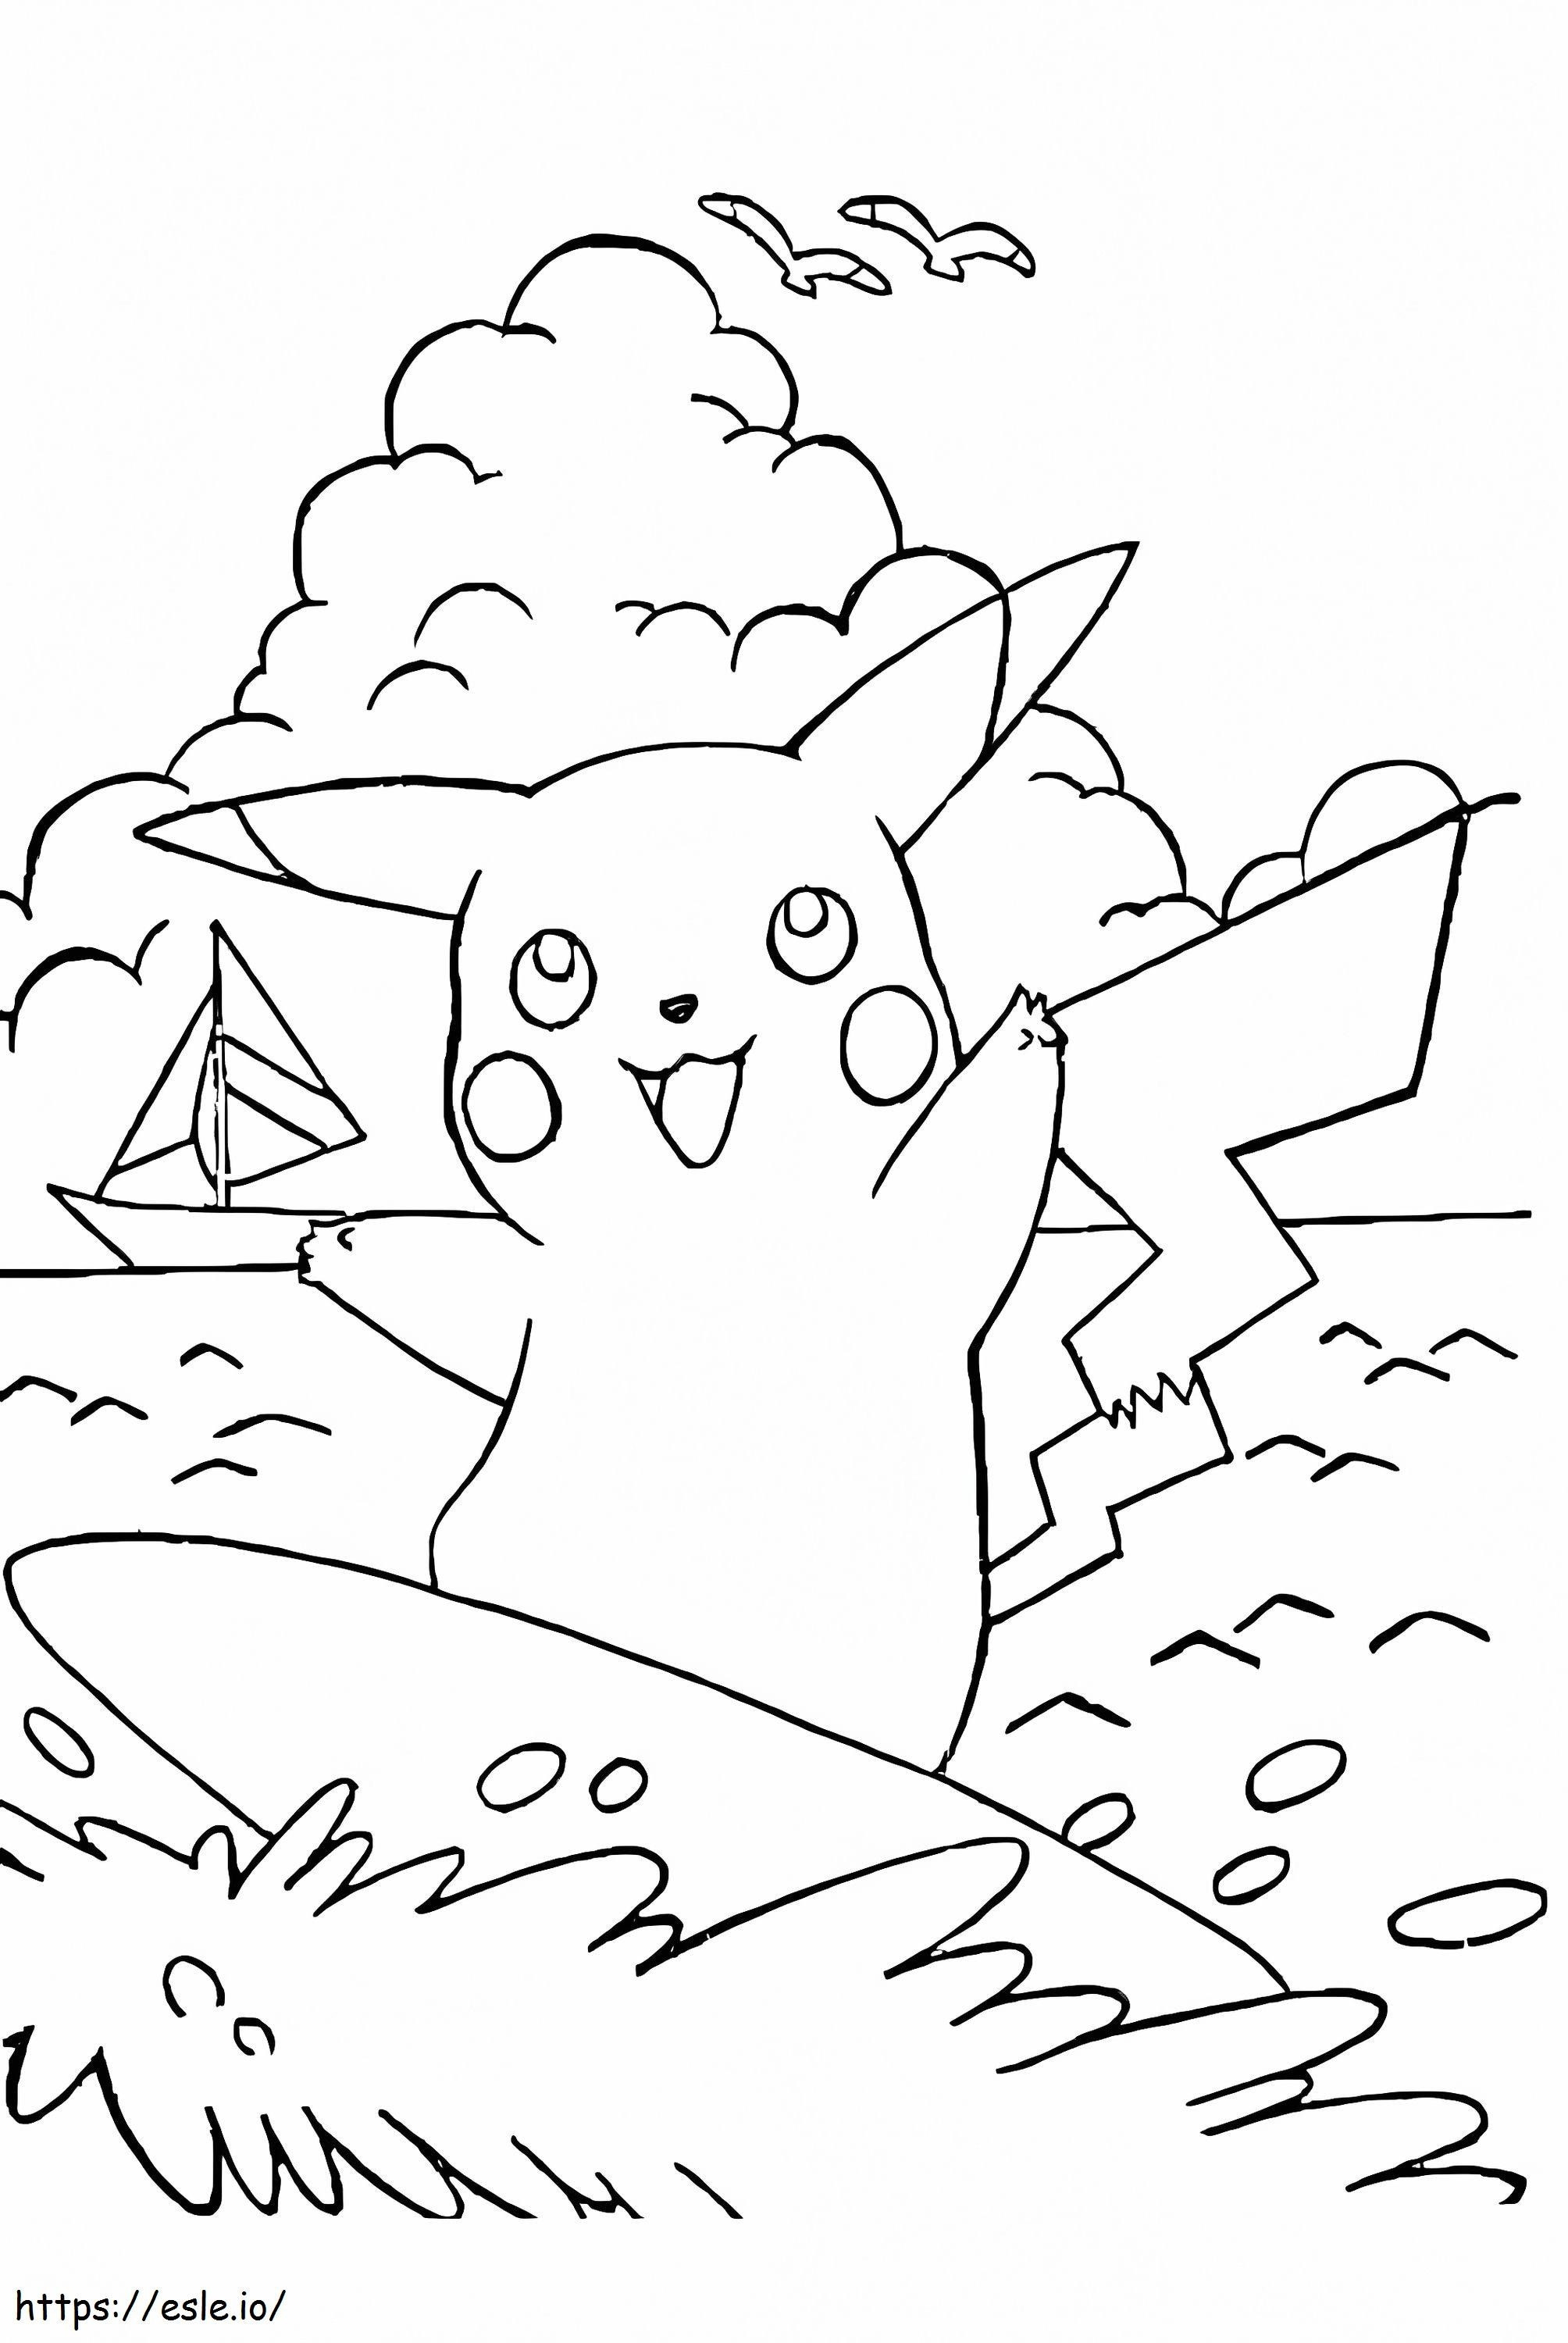 Coloriage Pikachu sur planche de surf à imprimer dessin